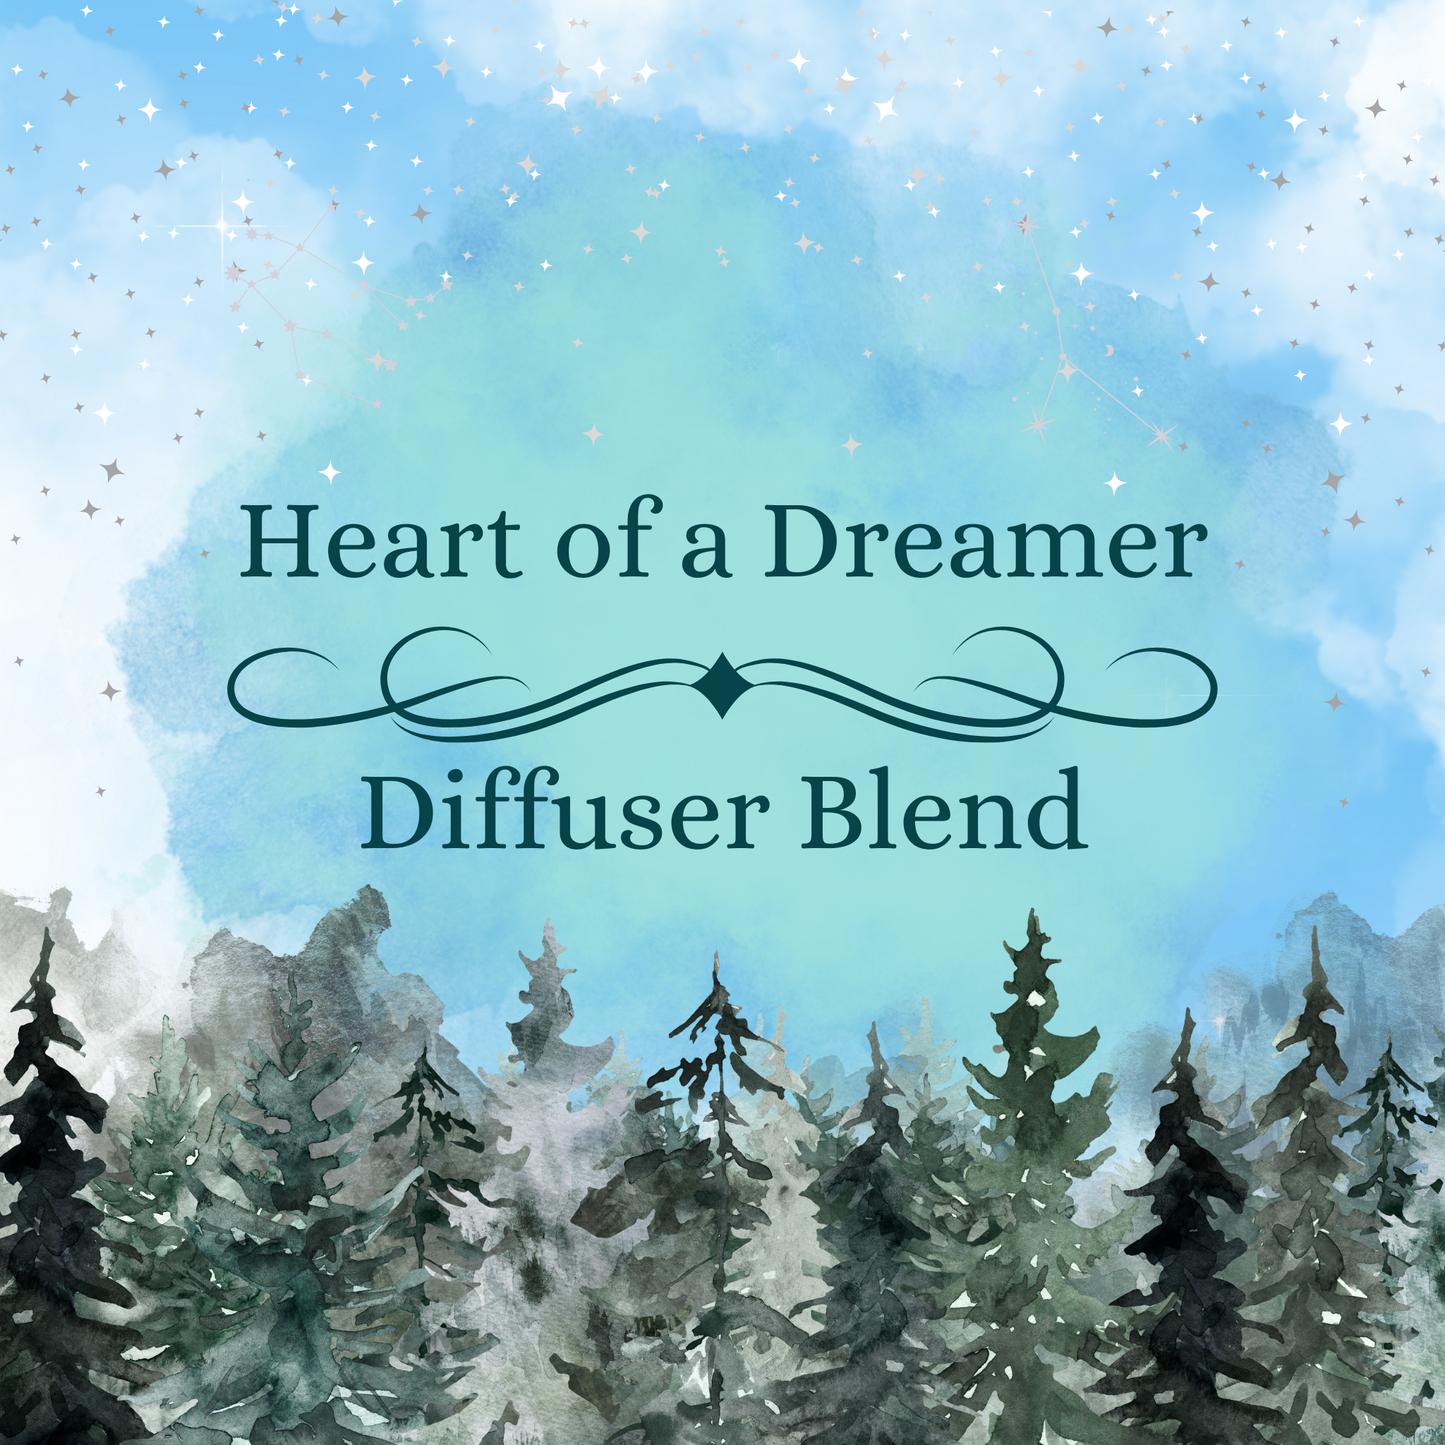 Heart of a Dreamer Diffuser Blend 15ml